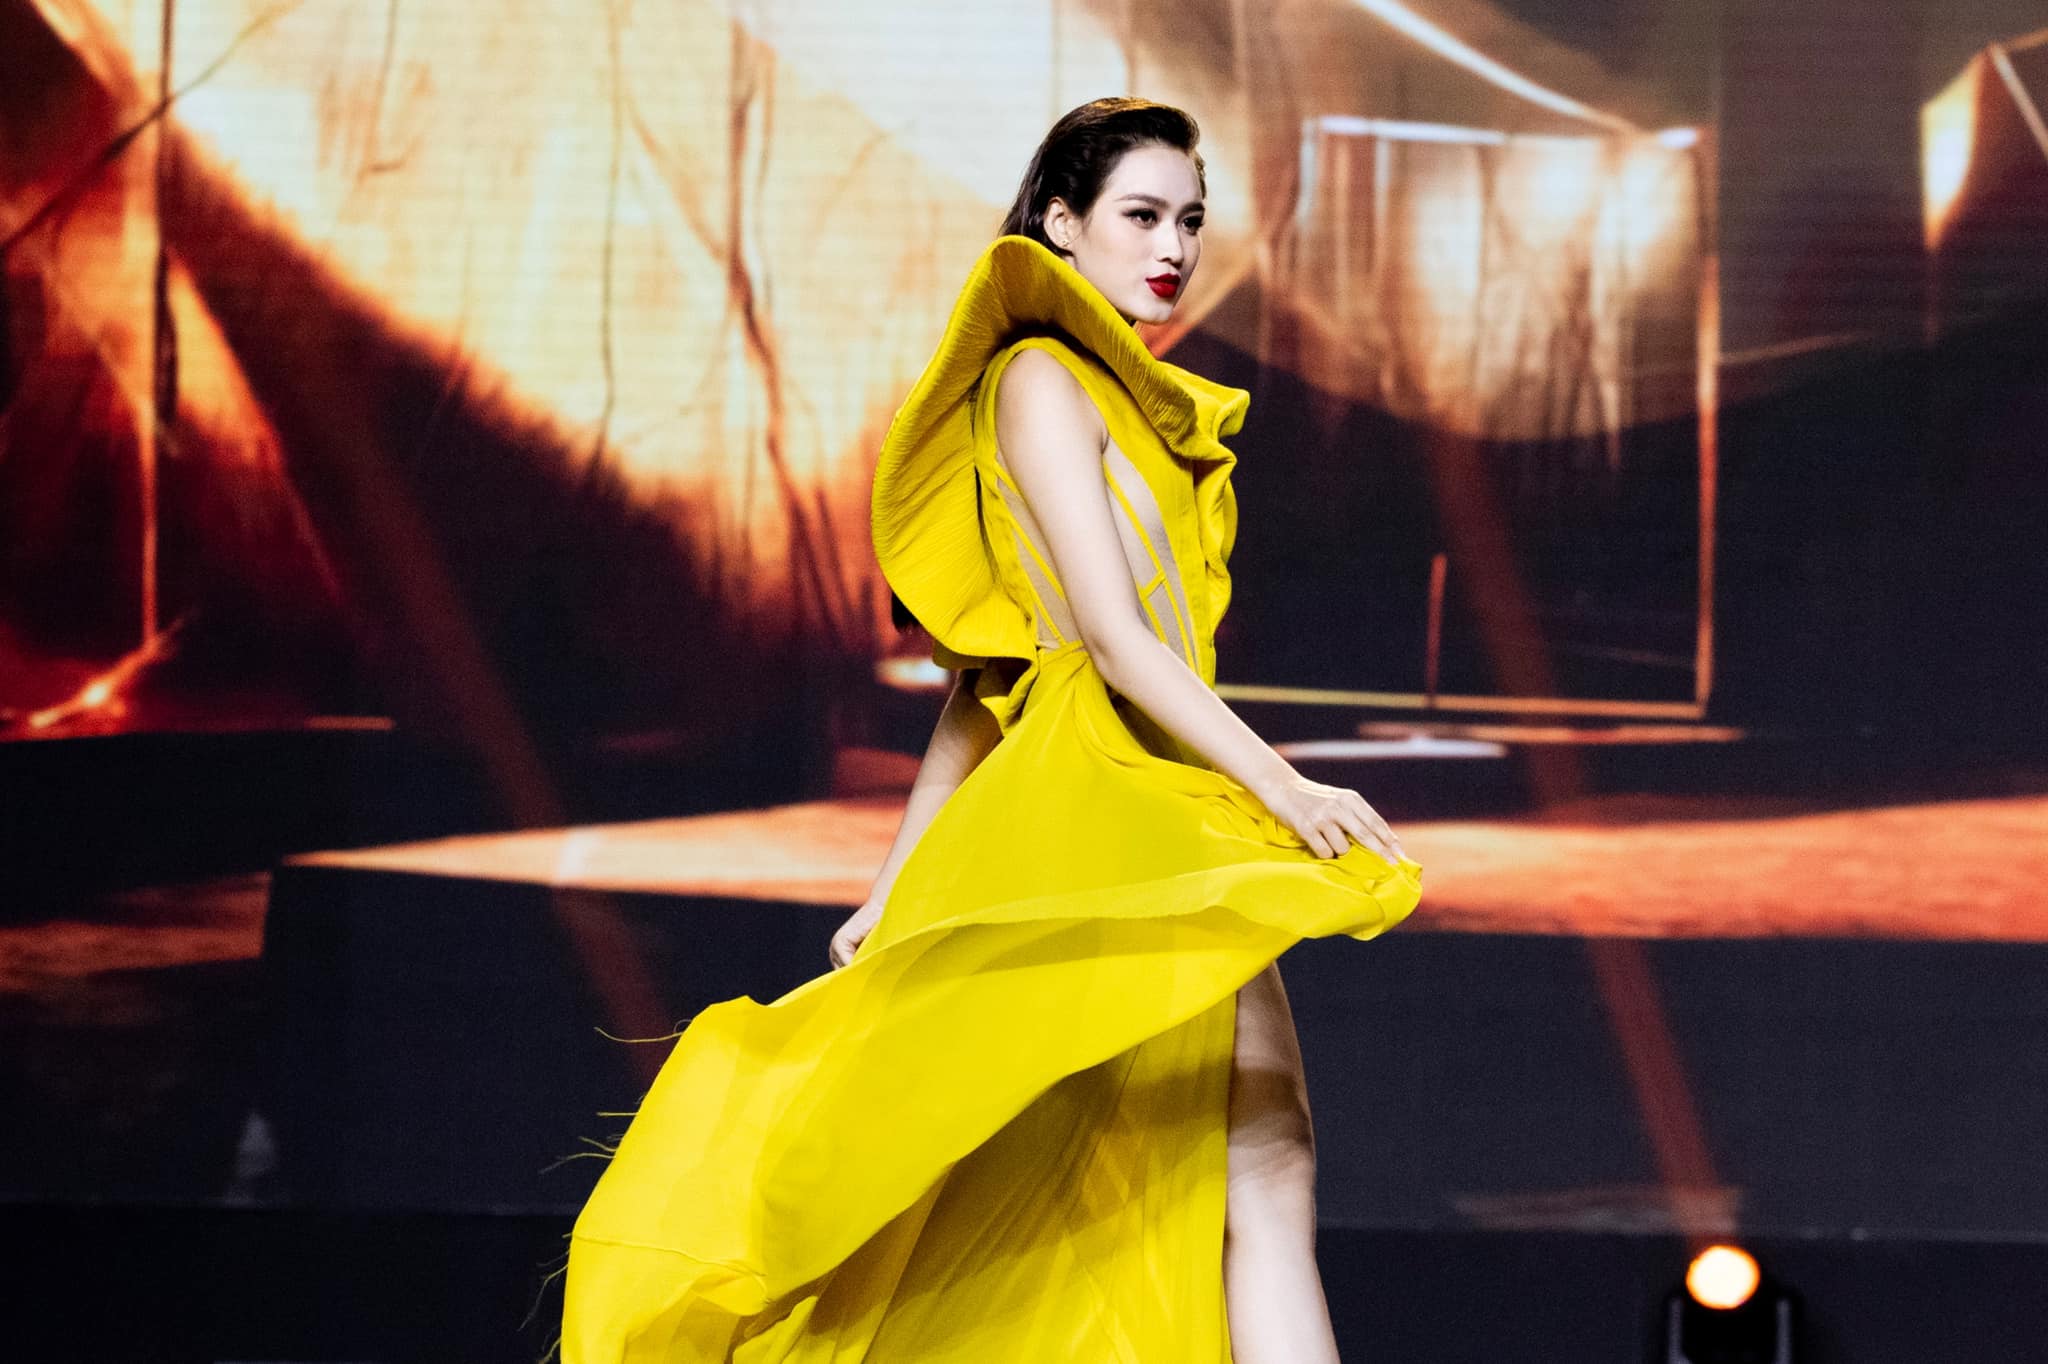 Hoa hậu Đỗ Hà khoe đôi chân dài gợi cảm trong thiết kế màu vàng nổi bật - Ảnh 3.